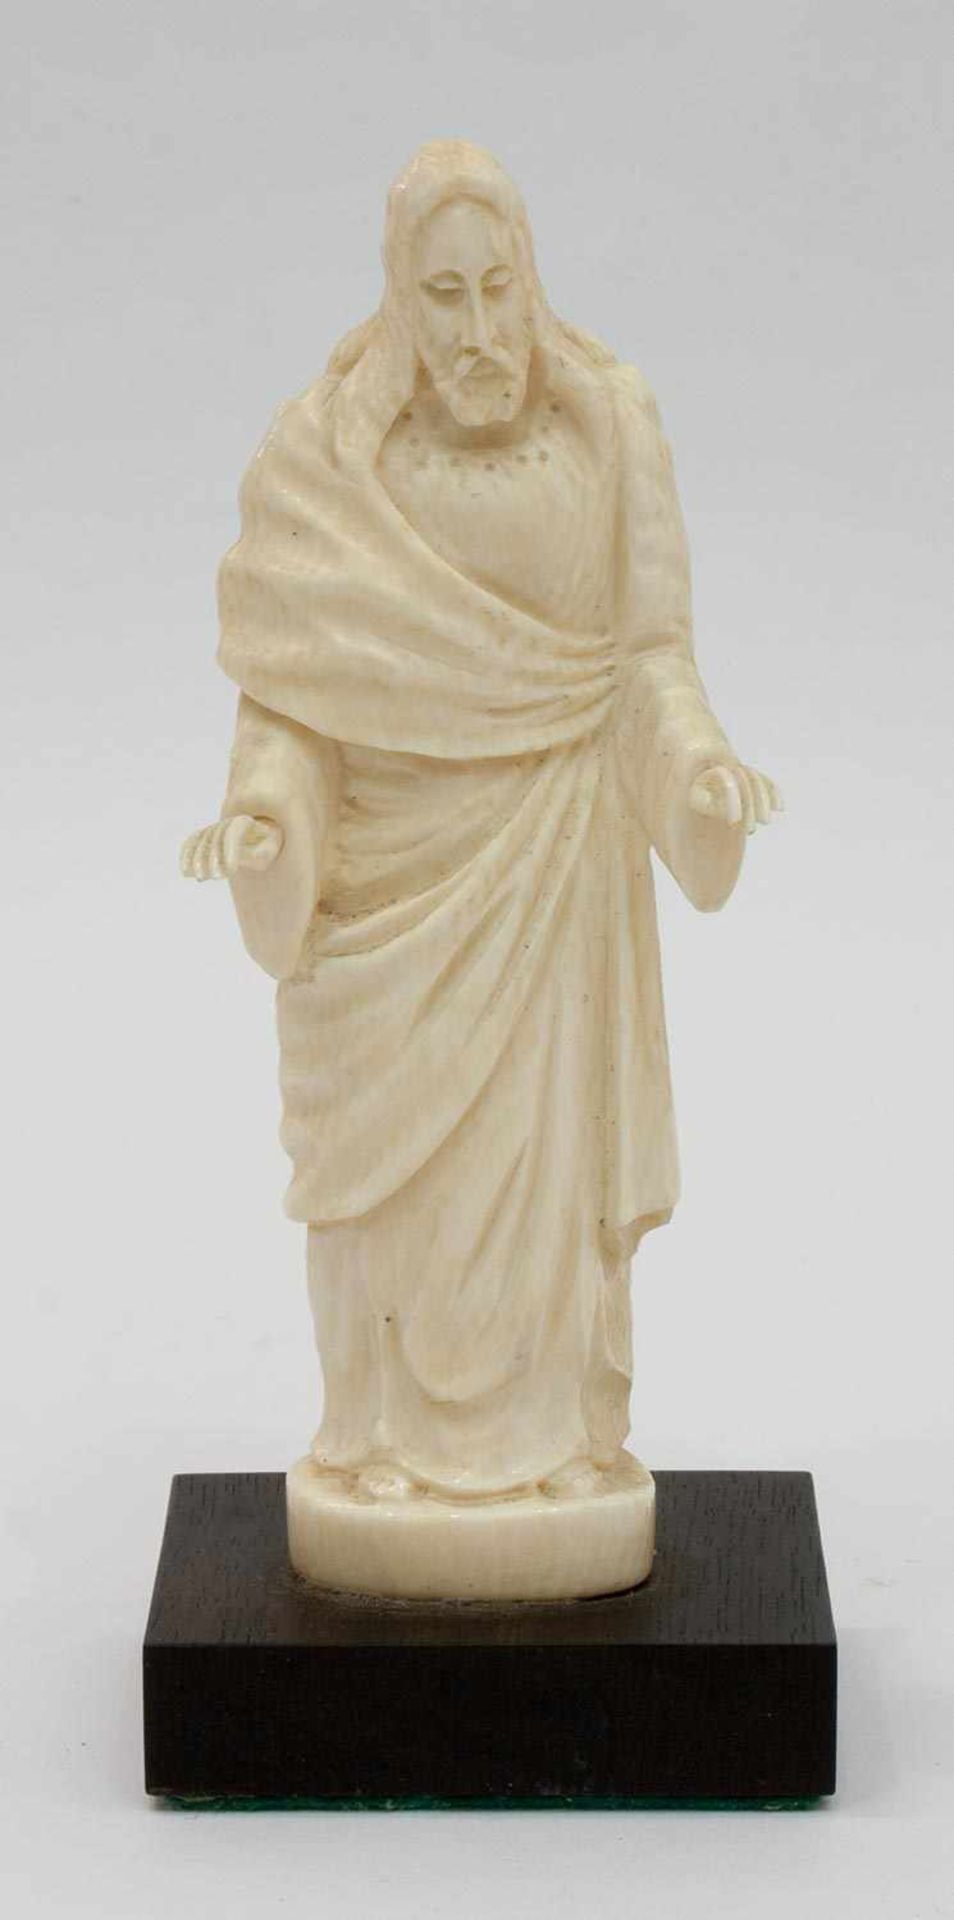 Segnender Christus Elfenbein, auf Holzsockel, fein geschnitzte Figur, H. 11 cm